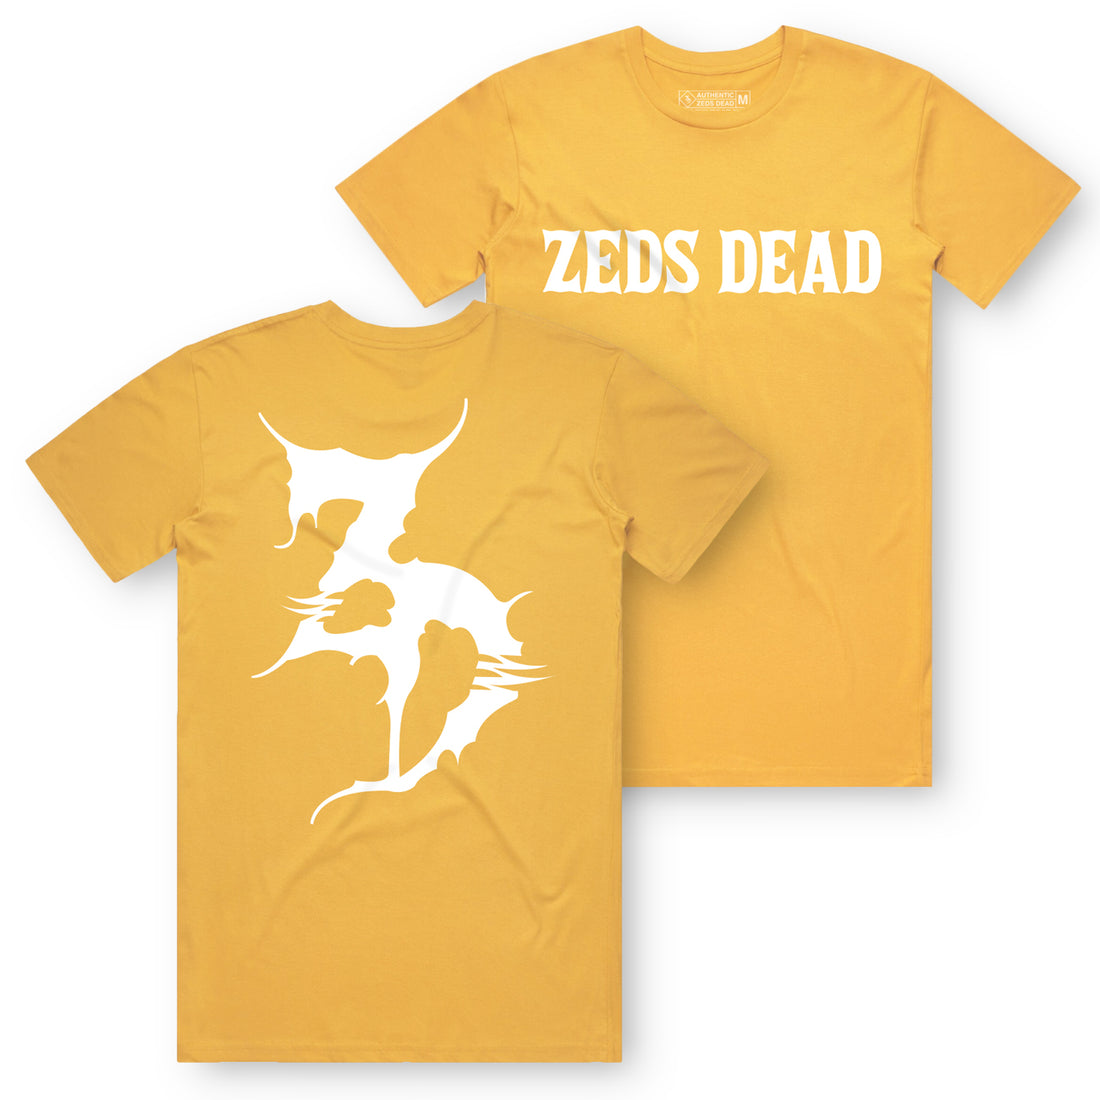 Zeds Dead - Clazzic - Gold Tee